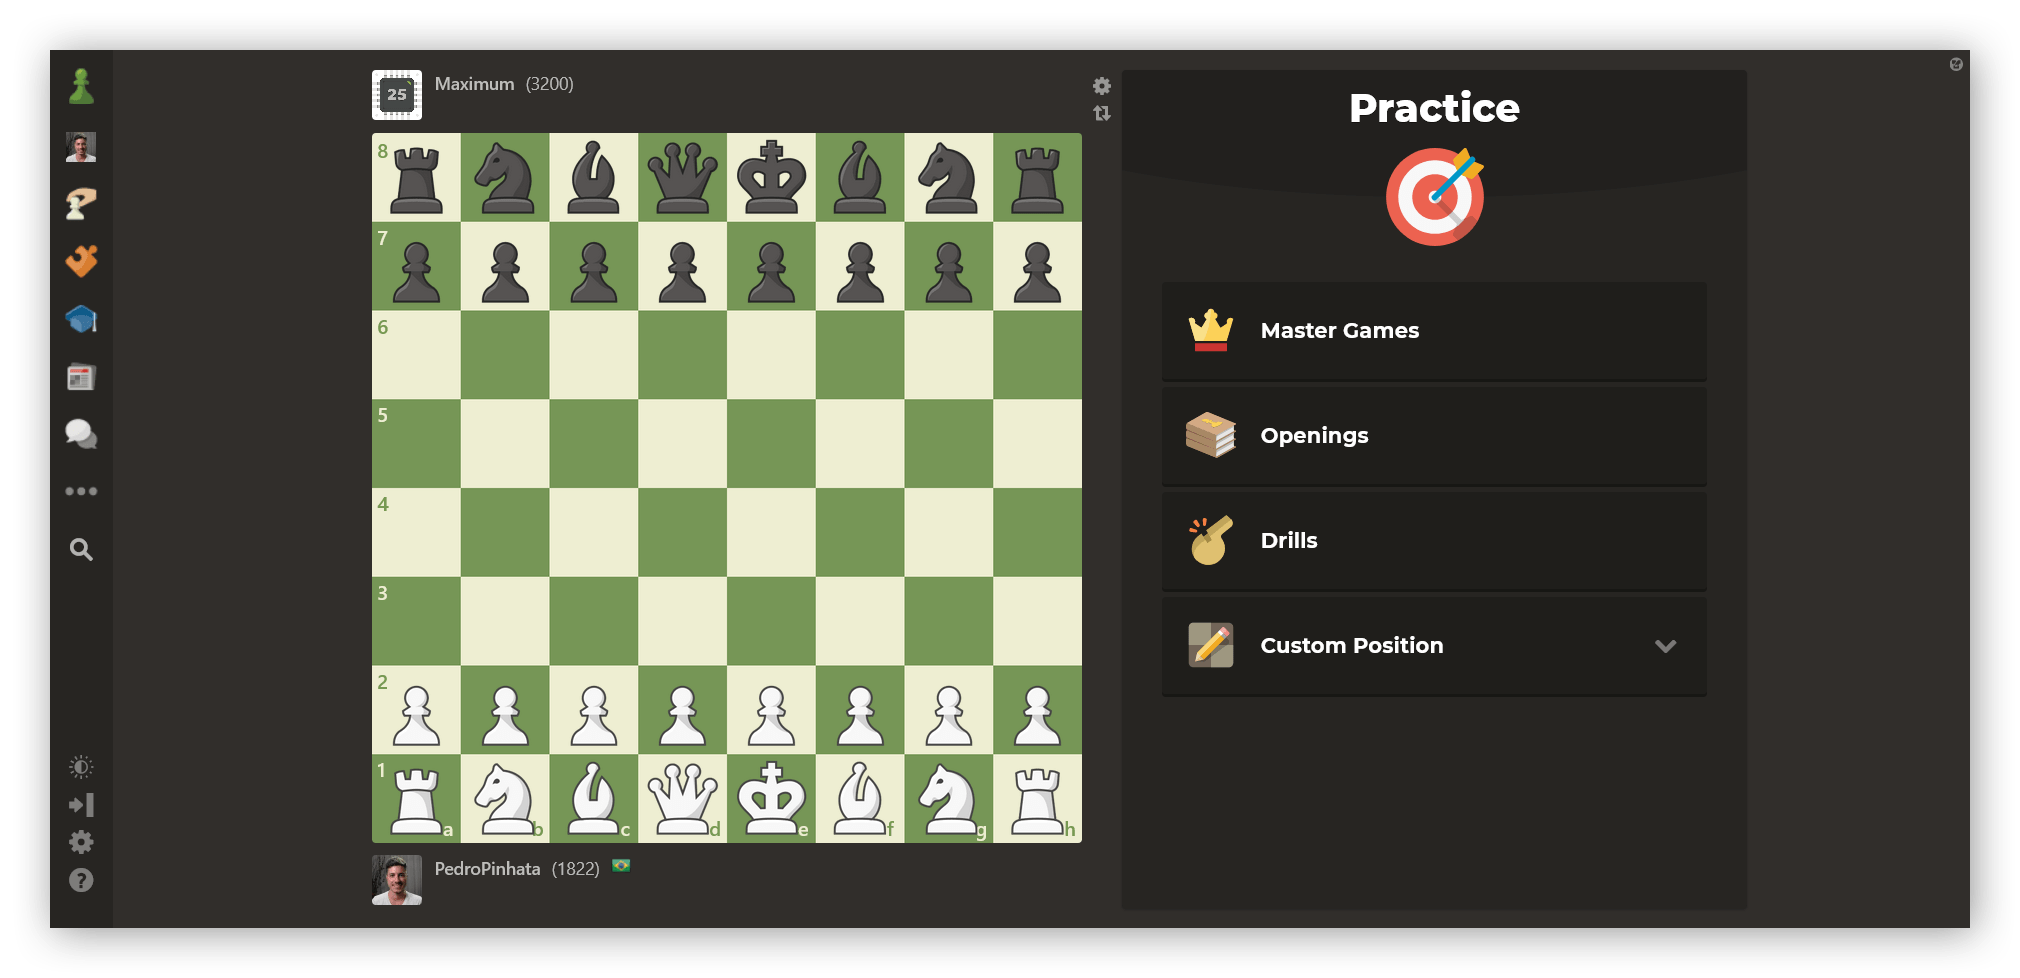 🤯 ¿Estás de broma no? 🤯 ¿¿¡¡1.h3!!?? - Chess.com - Español